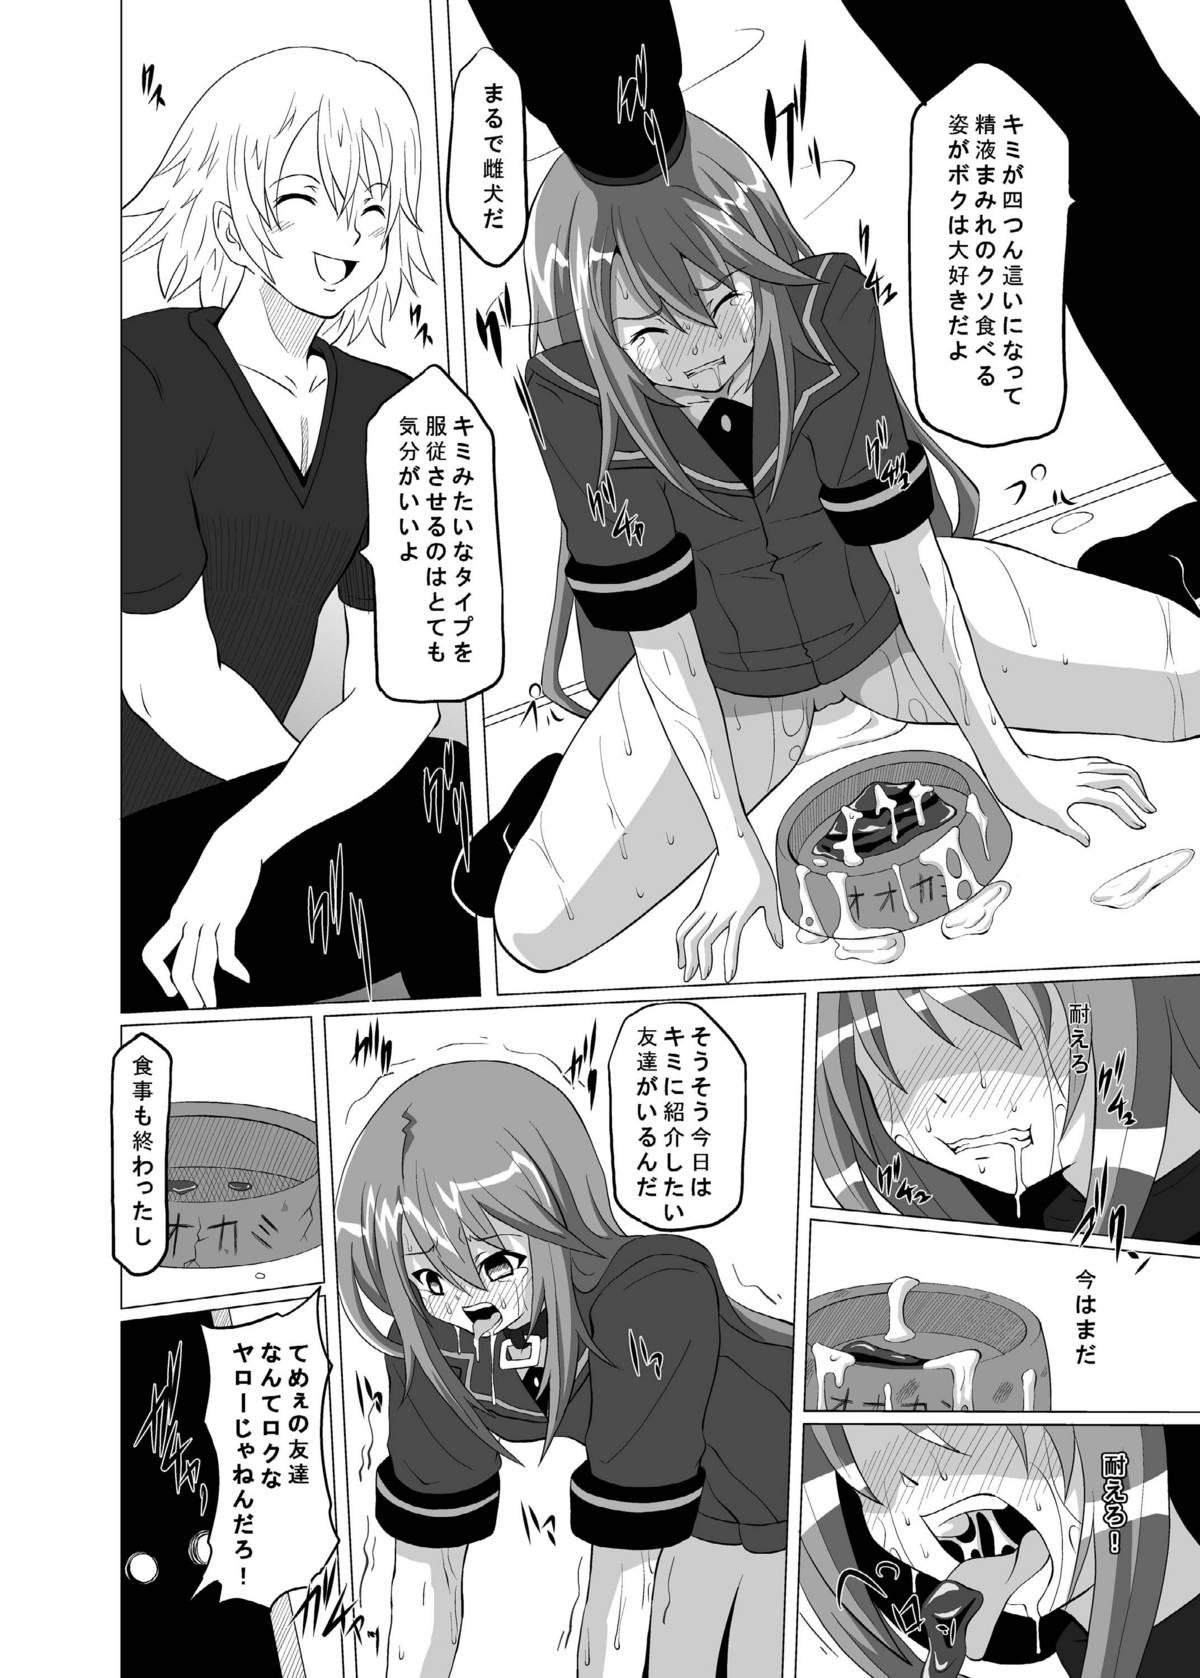 Foreplay Zoku Otogi no Sekai - Ookami san to shichinin no nakama tachi Sucking Dicks - Page 10